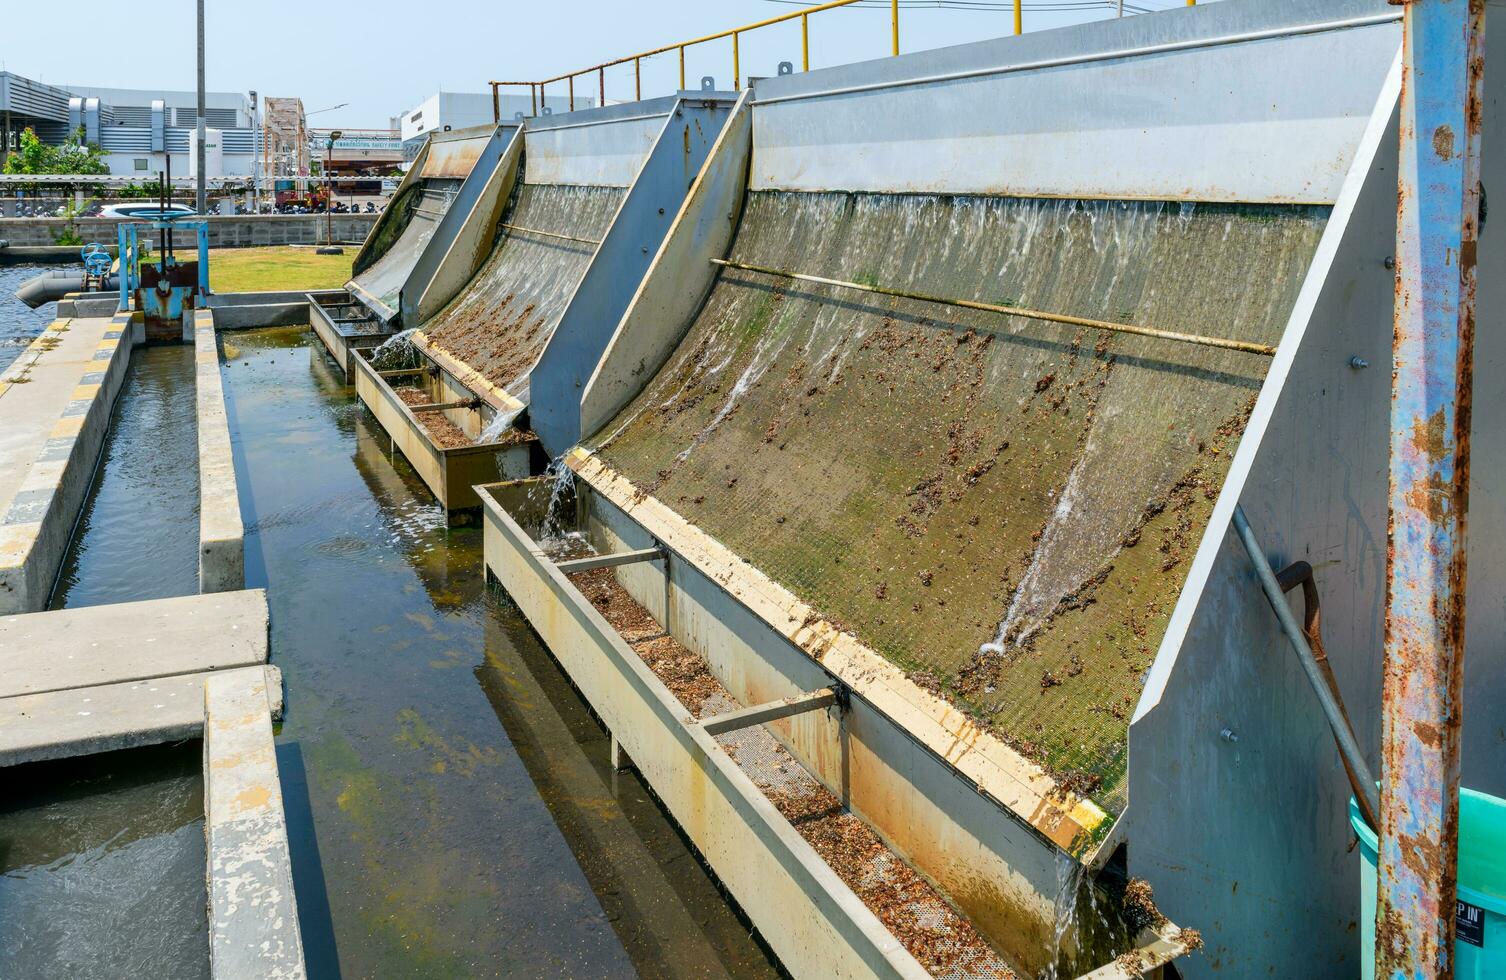 sediment filtrera i avloppsvatten behandling damm eller luftad lagun. miljö- vetenskap foto